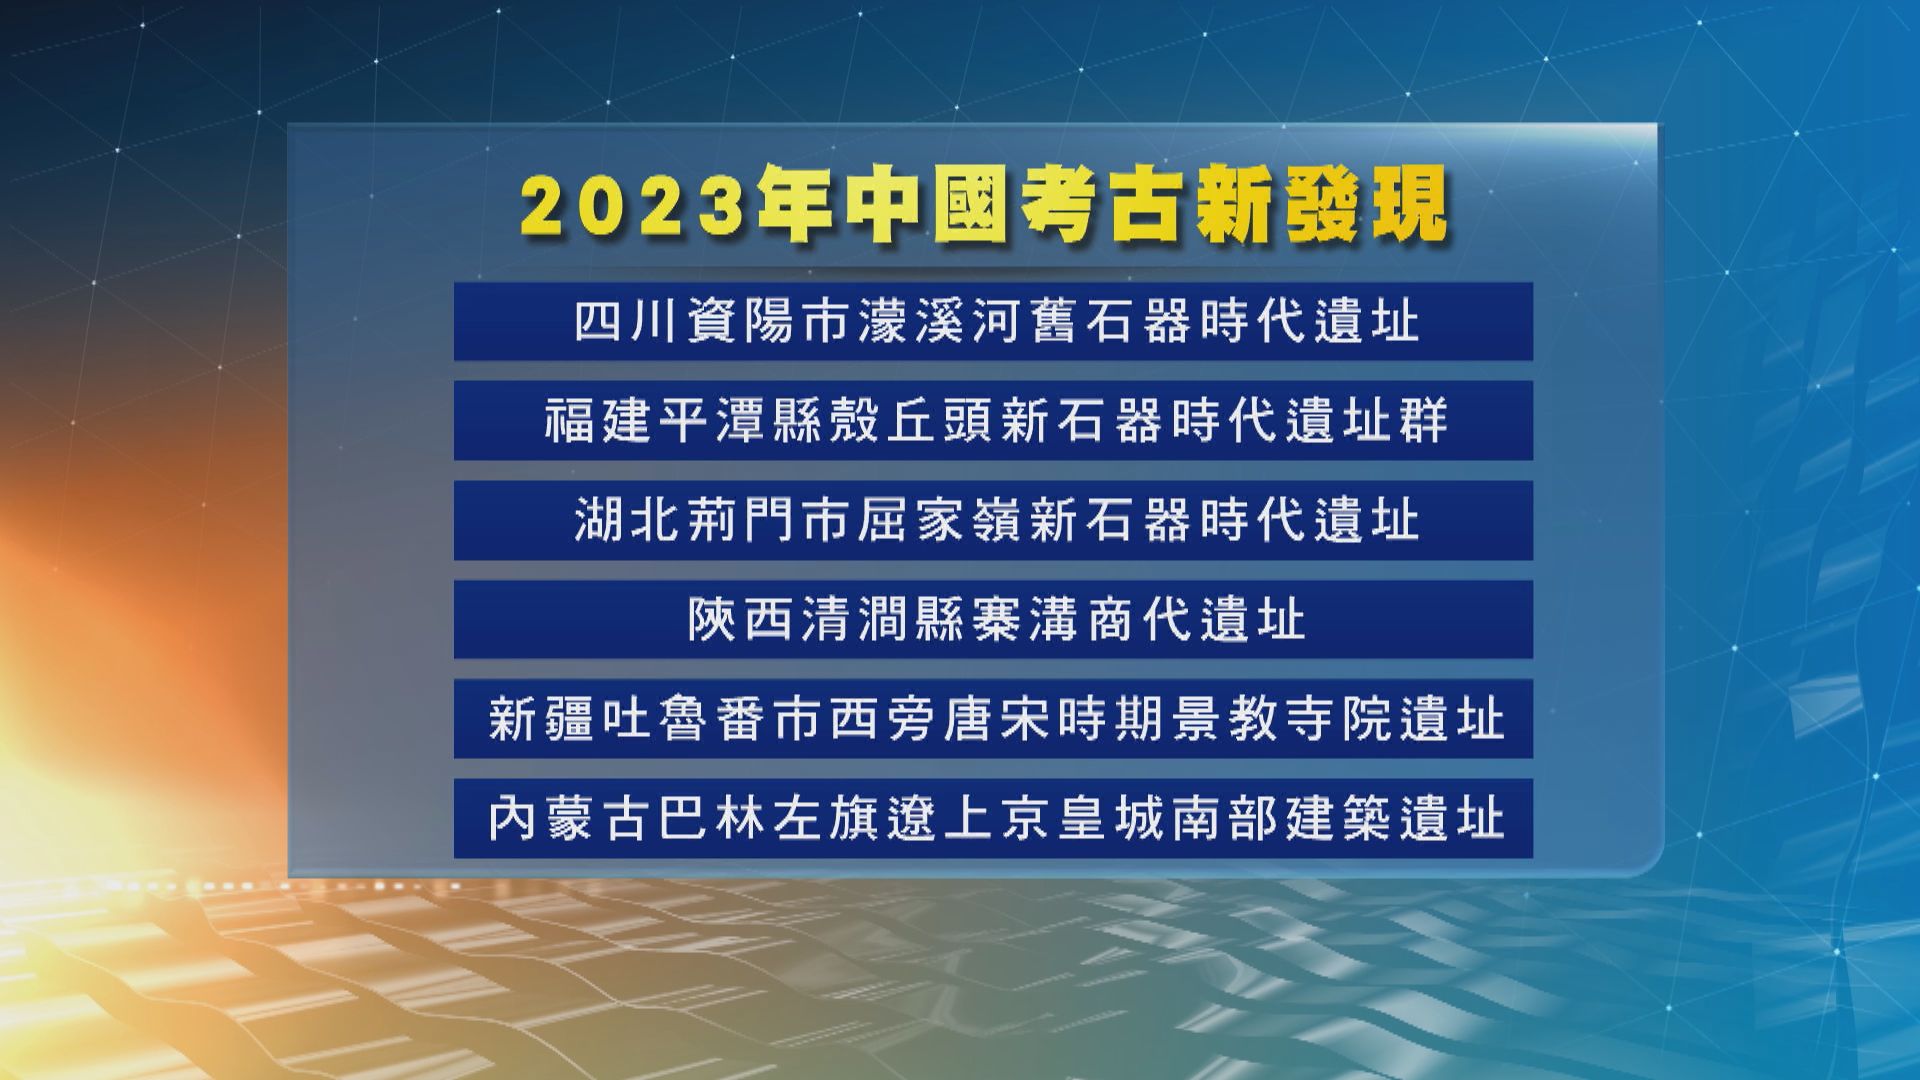 2023年中國考古新發現評選結果揭曉